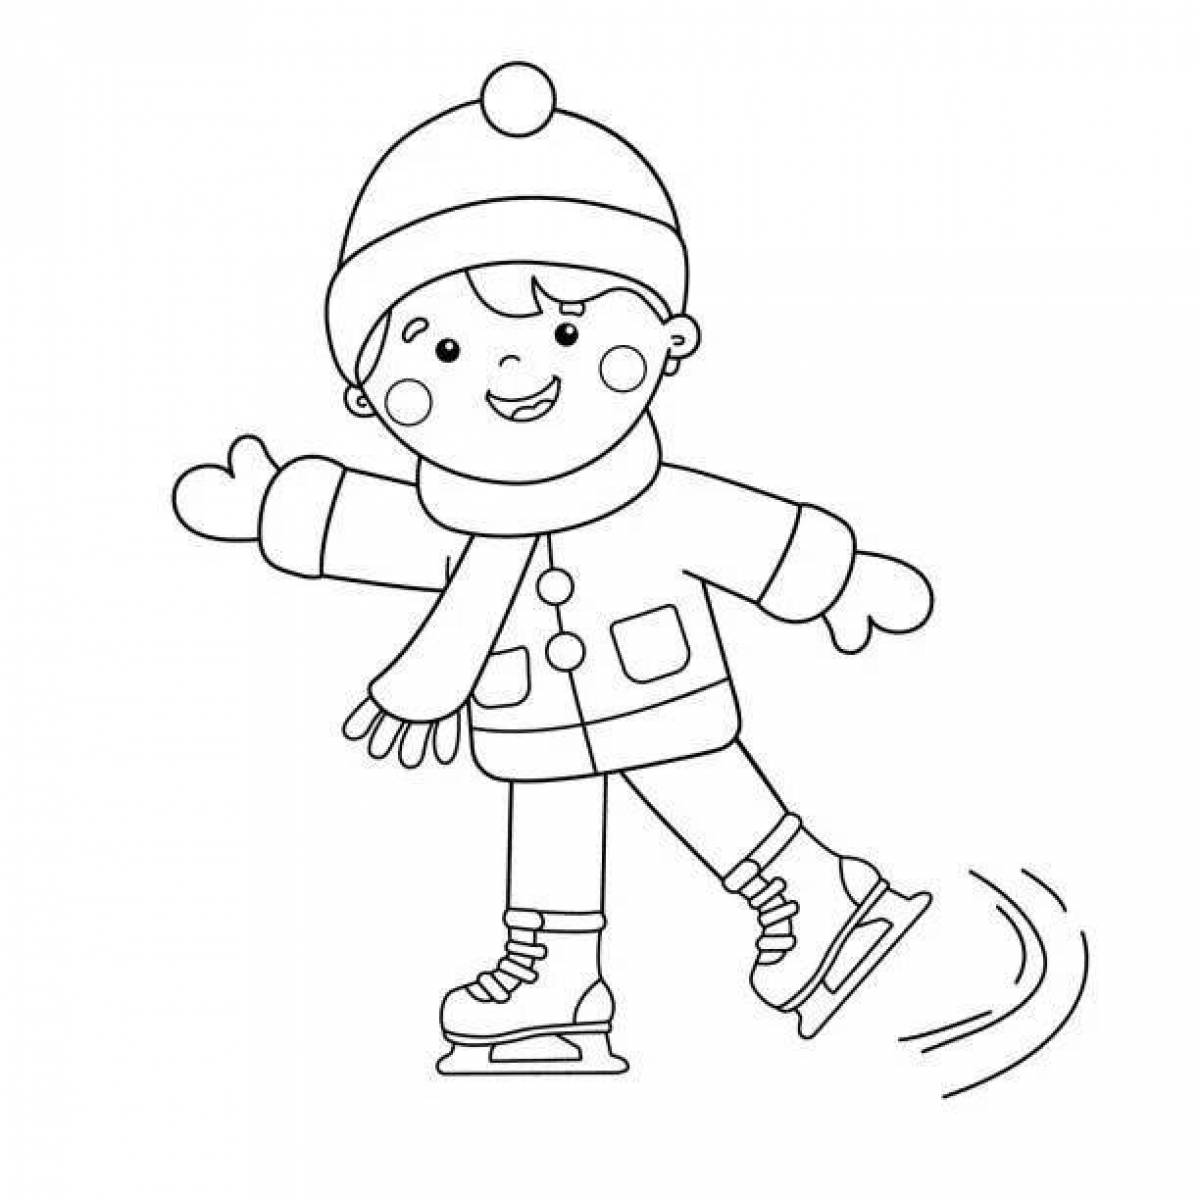 A cheerful girl on skates